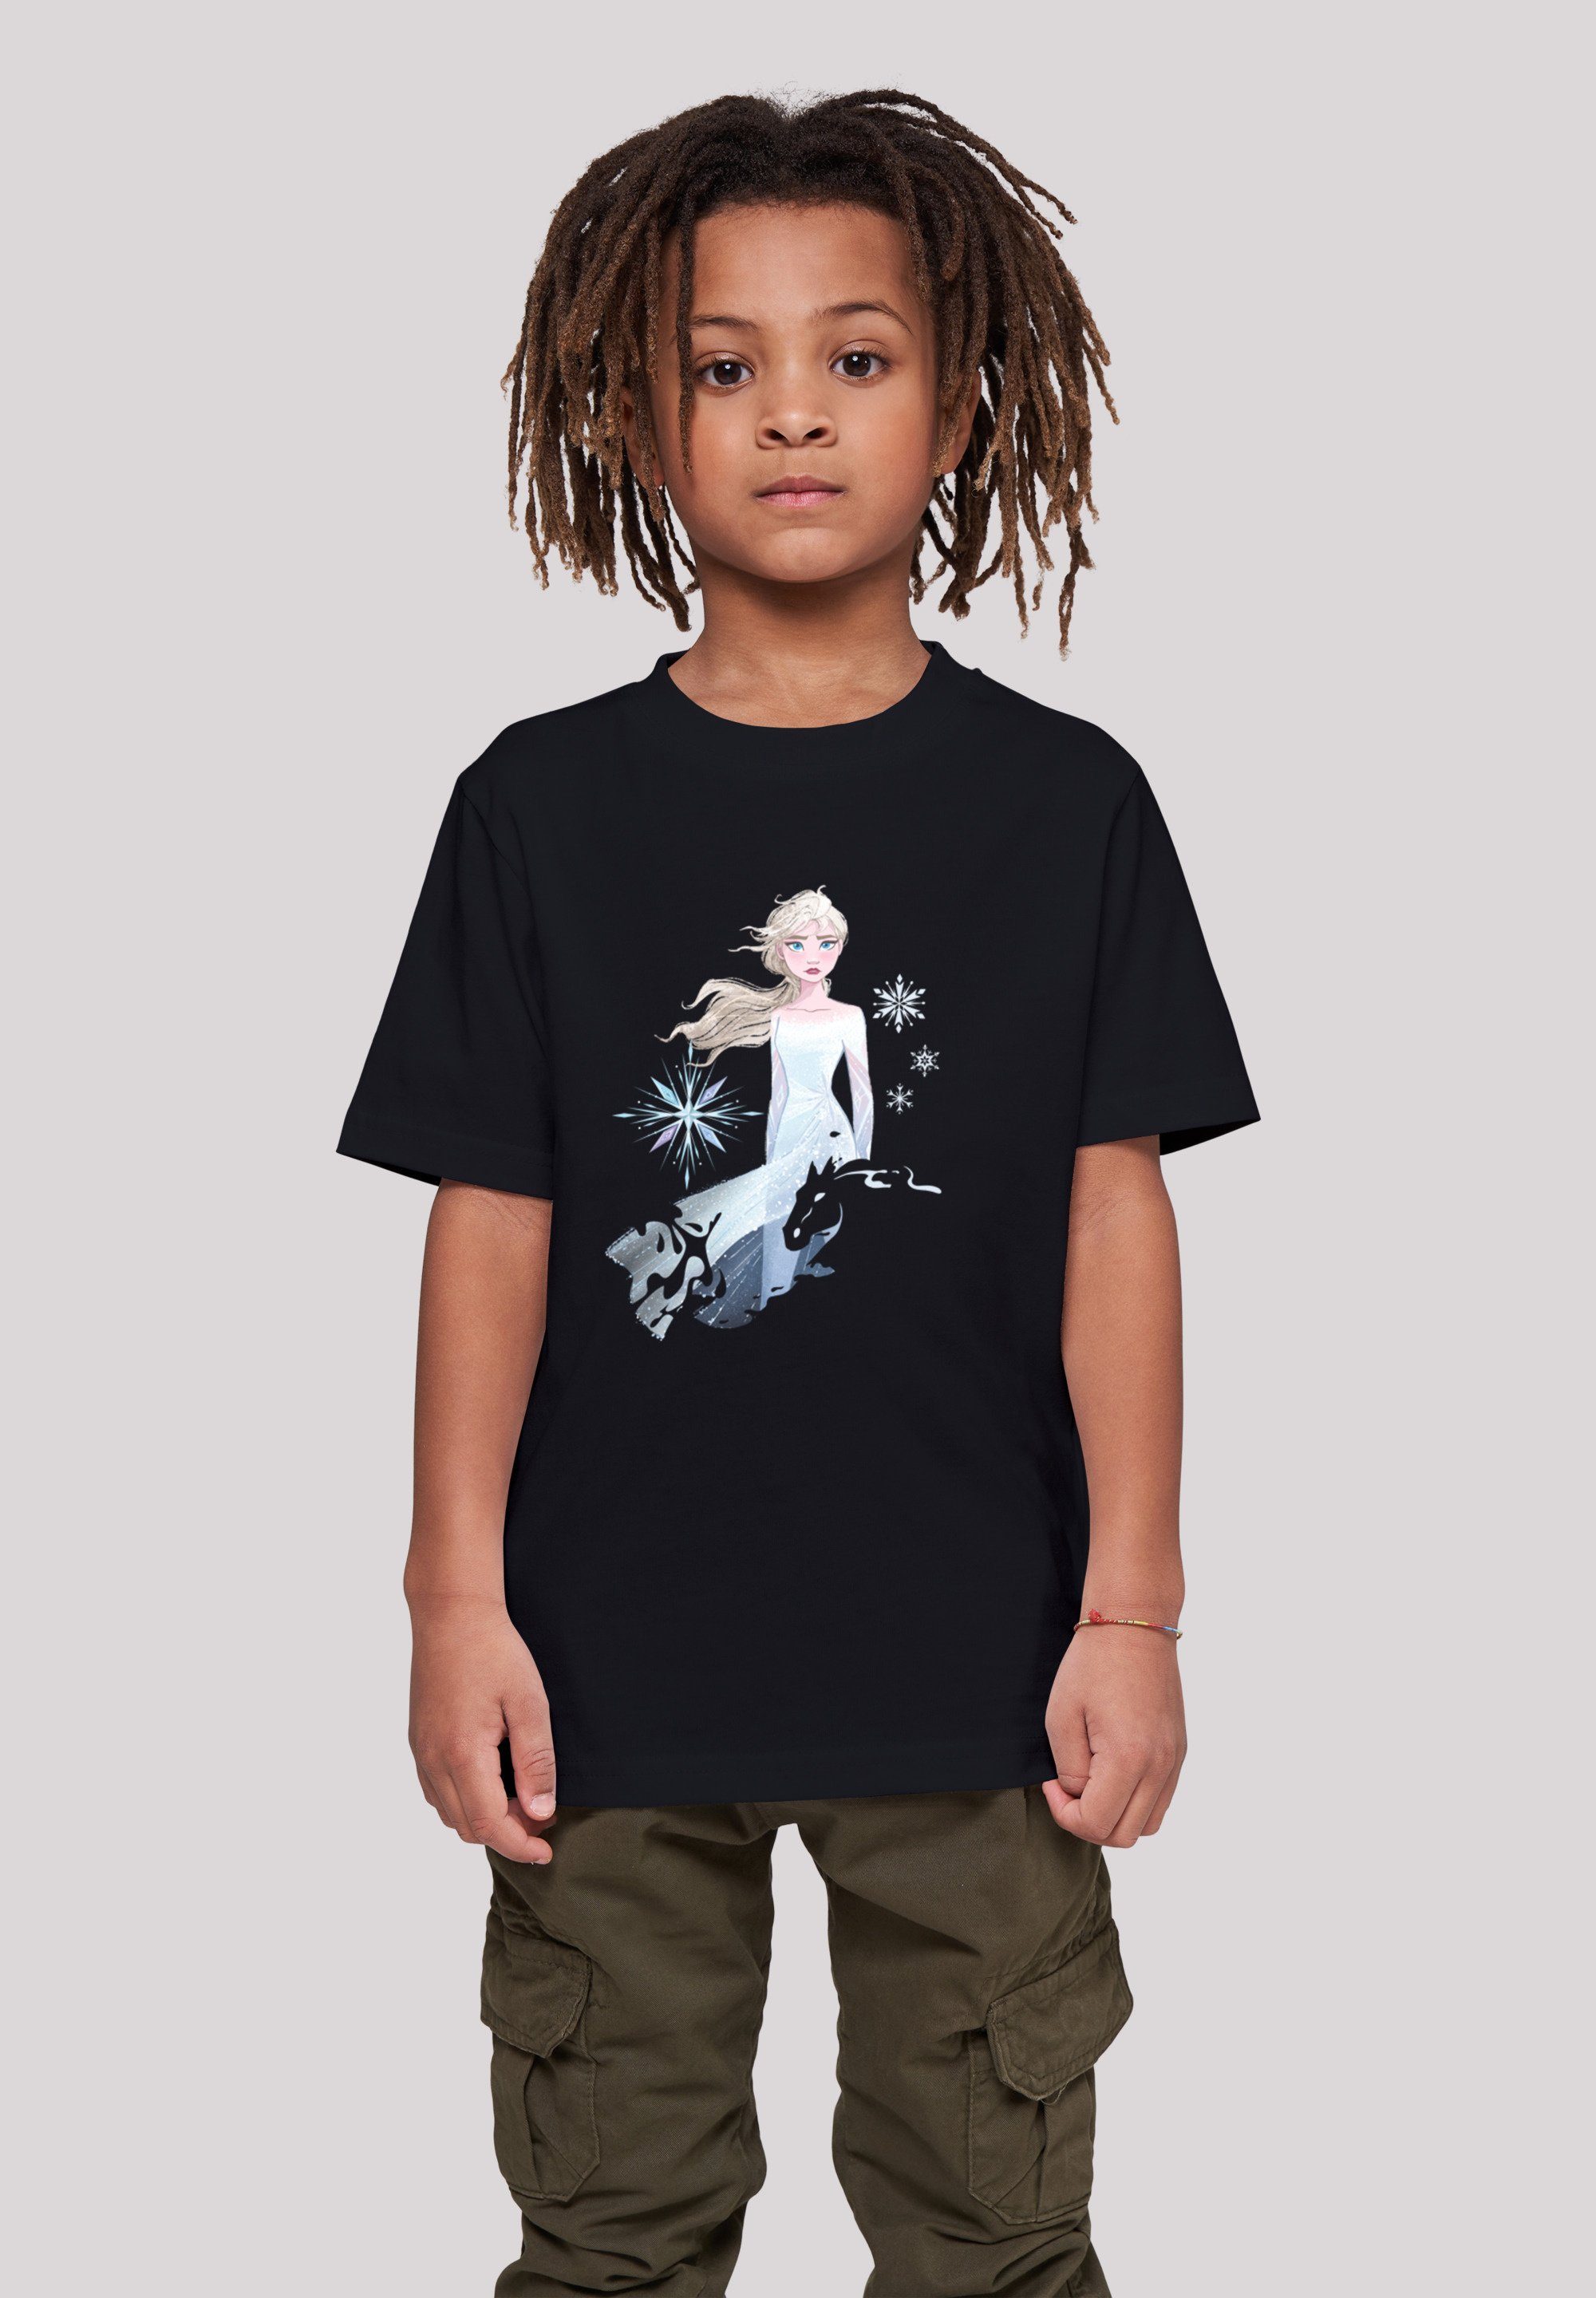 Elsa Silhouette Pferd Merch,Jungen,Mädchen,Bedruckt 2 Frozen Unisex schwarz Disney F4NT4STIC Wassergeist Nokk T-Shirt Kinder,Premium